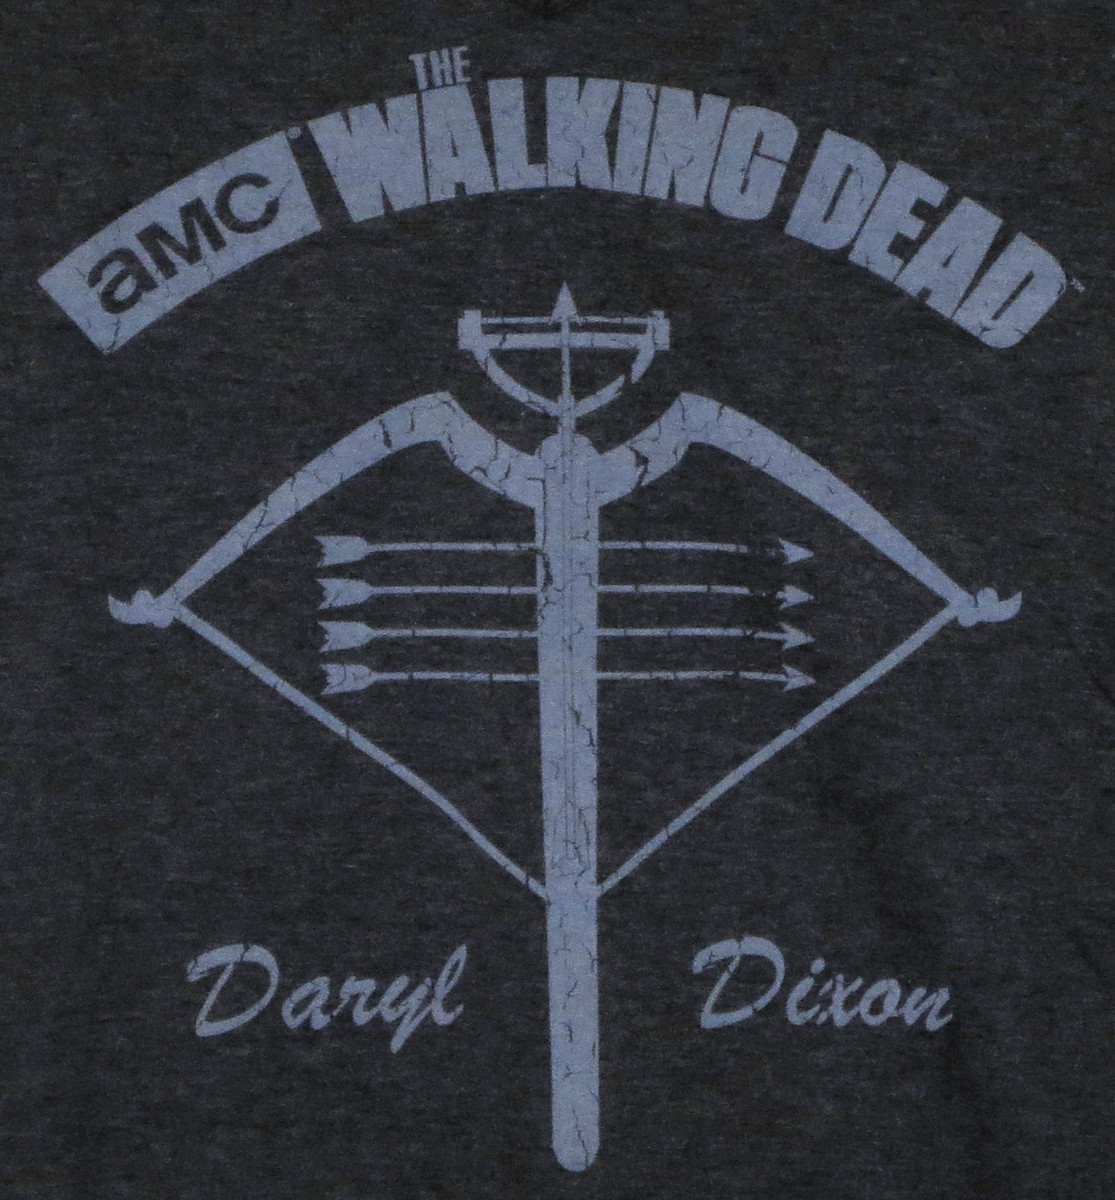 Walking Dead T Shirt